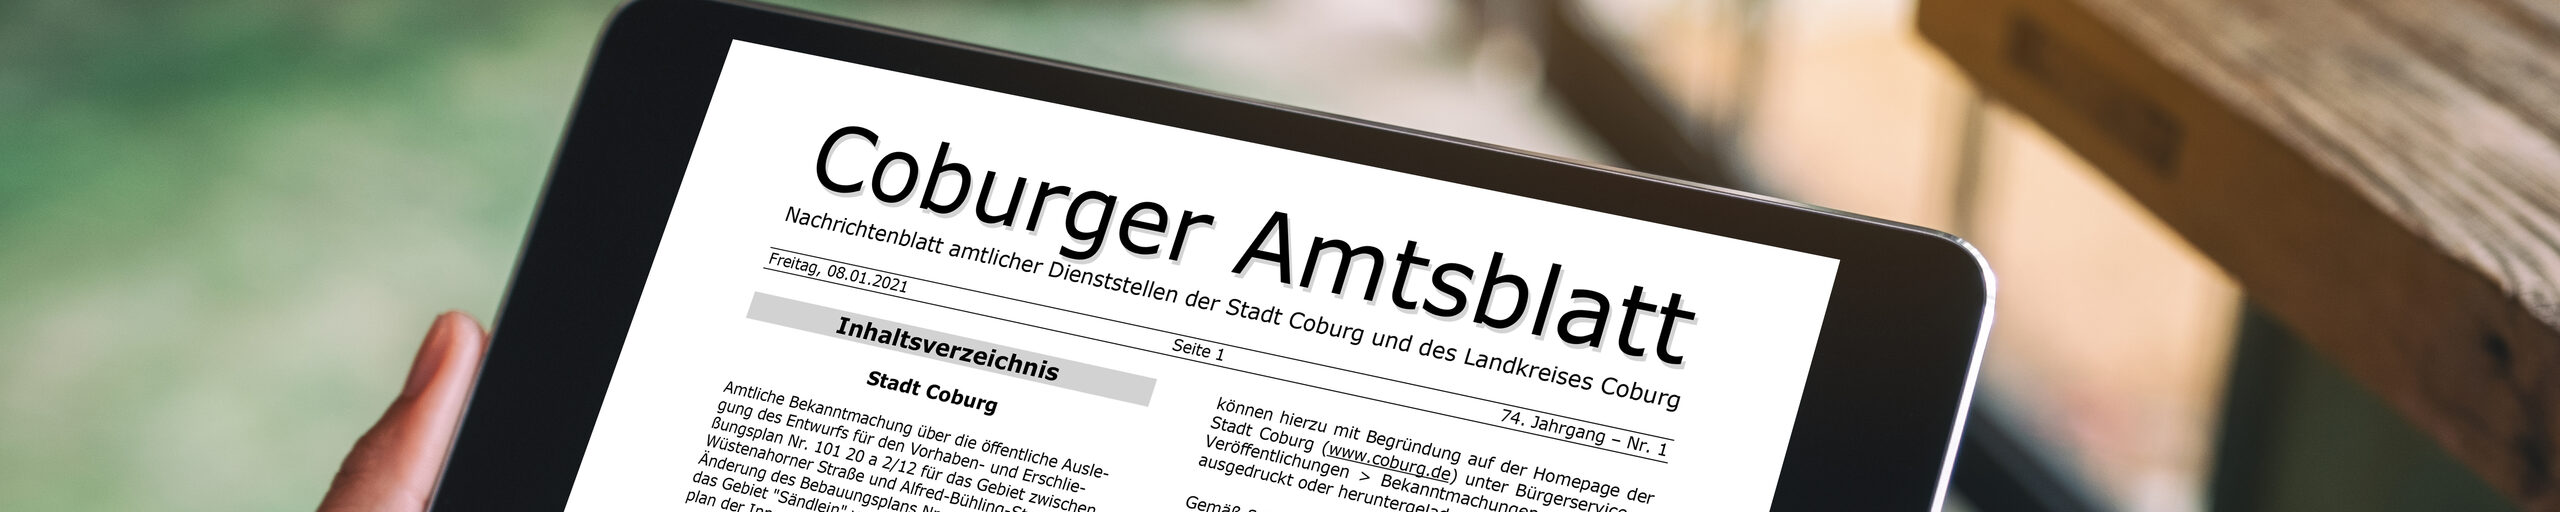 Coburger Amtsblatt